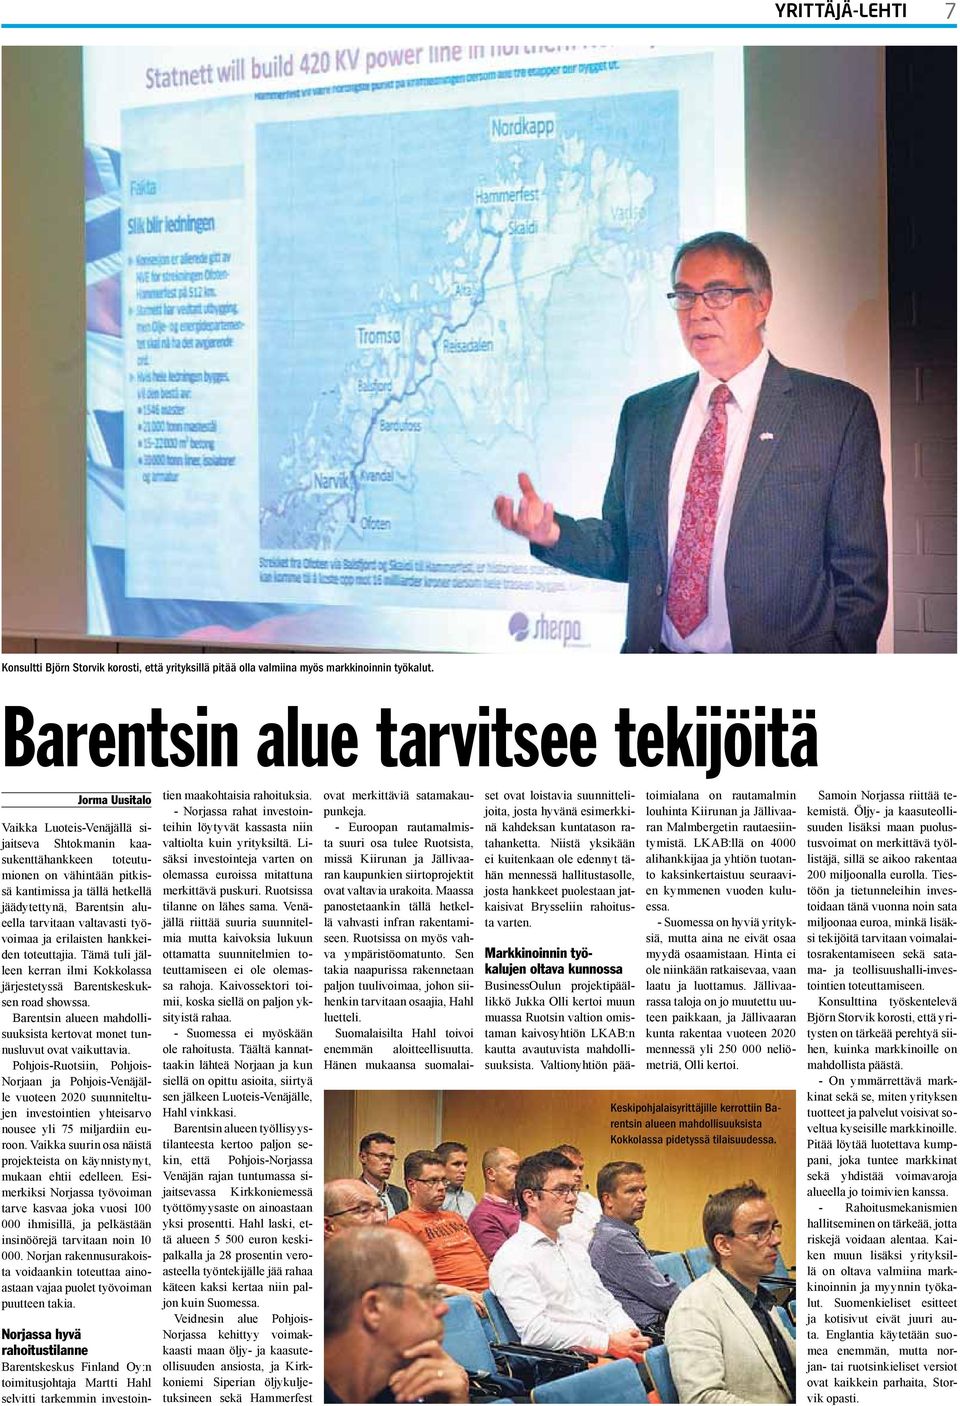 Barentsin alueella tarvitaan valtavasti työvoimaa ja erilaisten hankkeiden toteuttajia. Tämä tuli jälleen kerran ilmi Kokkolassa järjestetyssä Barentskeskuksen road showssa.